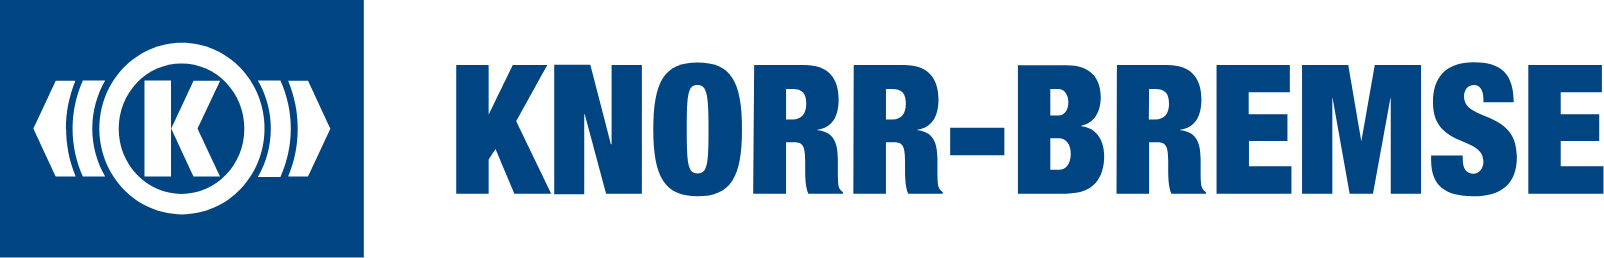 Knorr-Bremse logo large (transparent PNG)